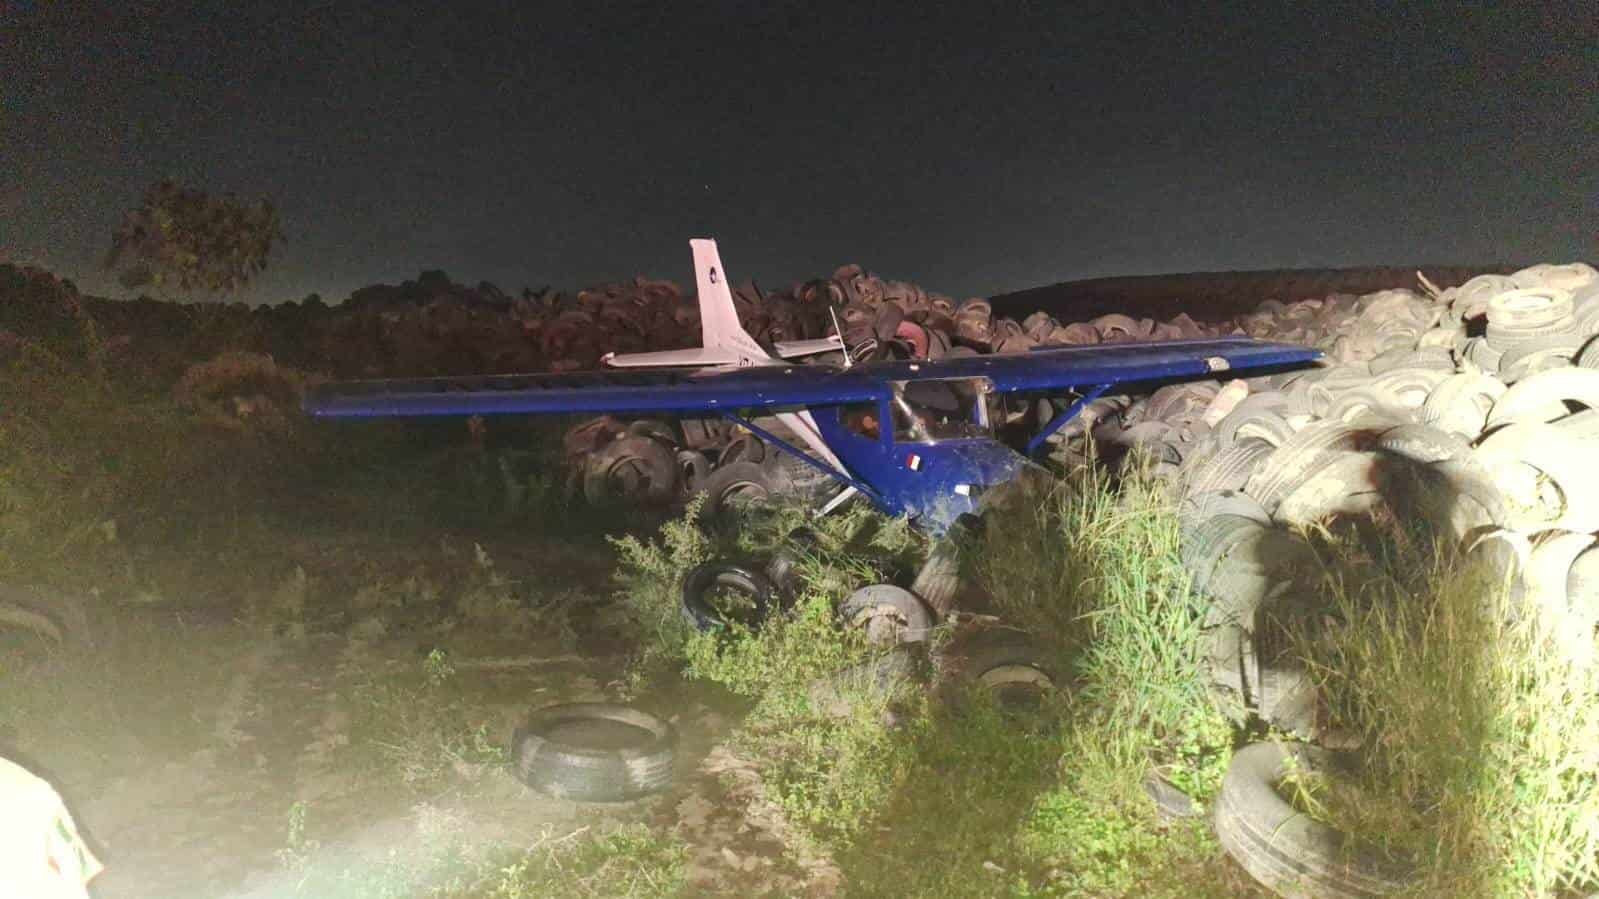 Una intensa movilización de los puestos de socorro se registró en el municipio del Carmen, al reportarse el desplome de avión en una grana abandonada.